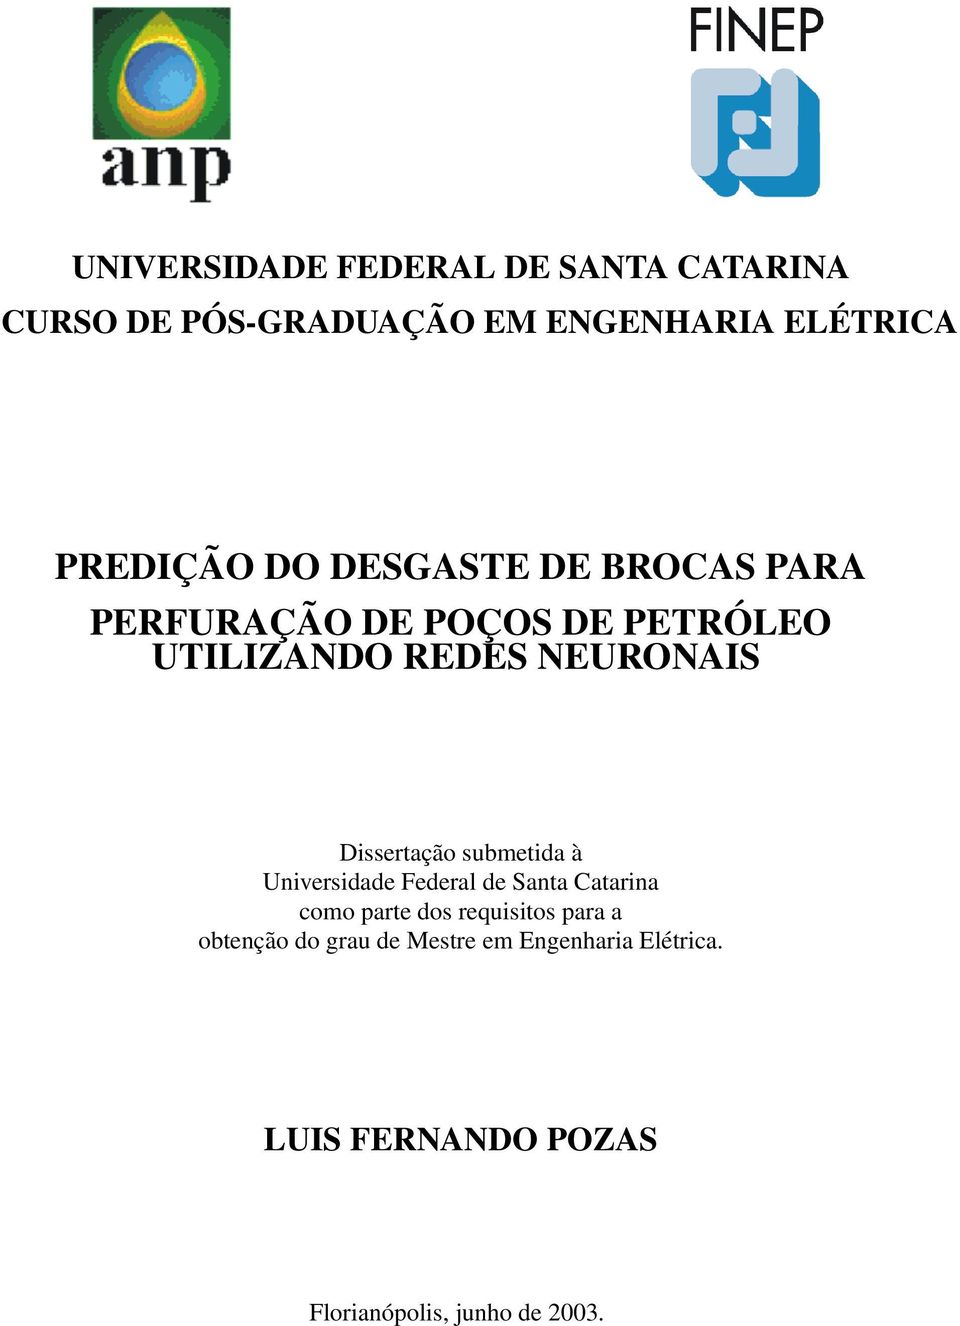 Dissertação submetida à Universidade Federal de Santa Catarina como parte dos requisitos para